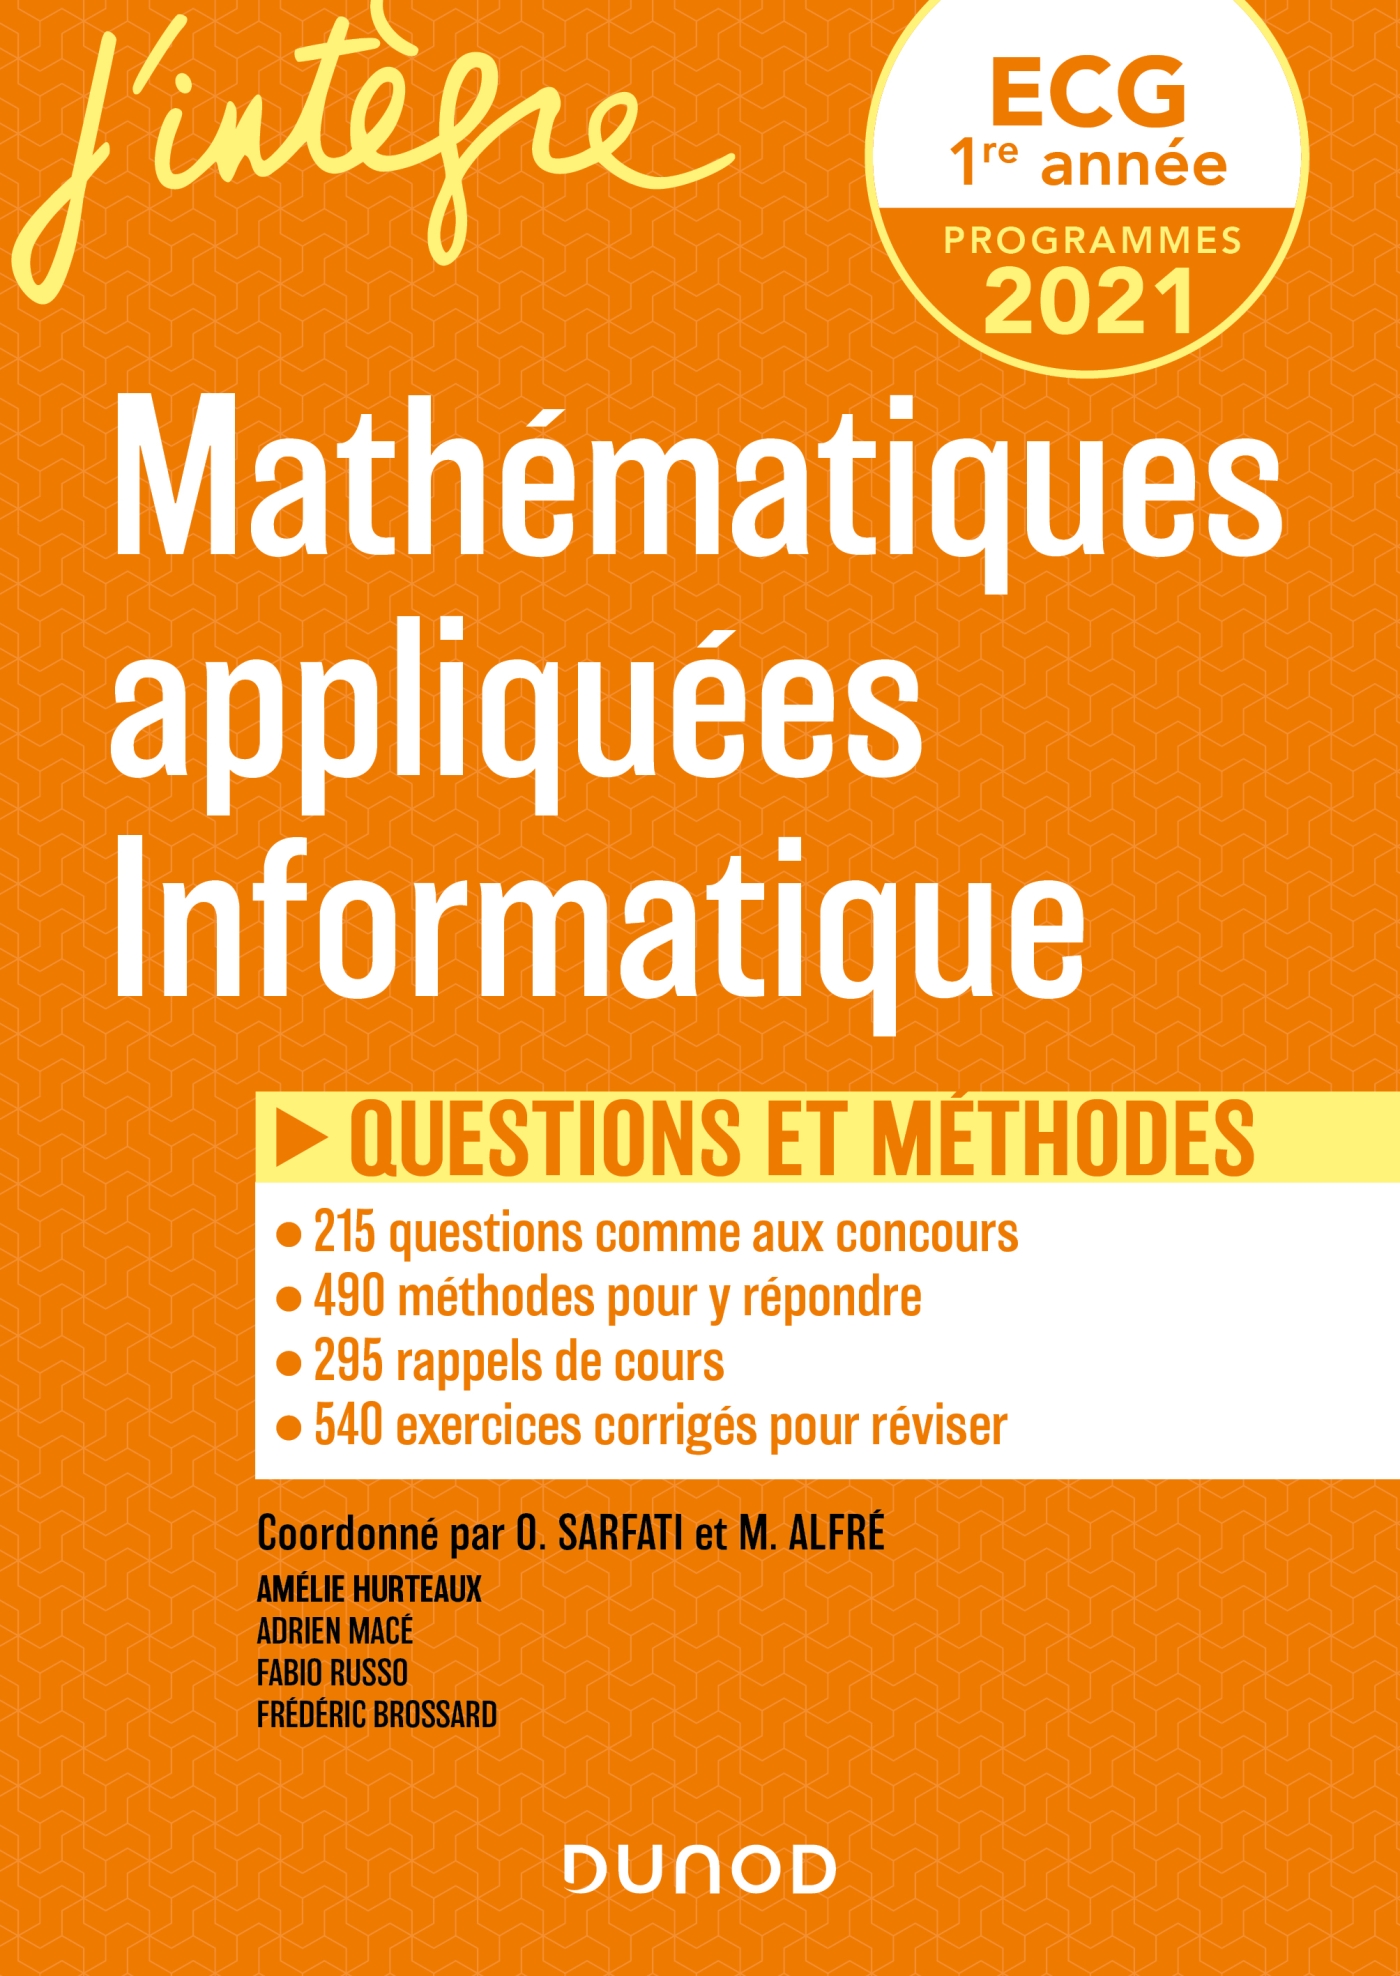 Ecg 1 Mathematiques Appliquees Questions Et Methodes Livre Mathematiques De Amelie Hurteaux Dunod